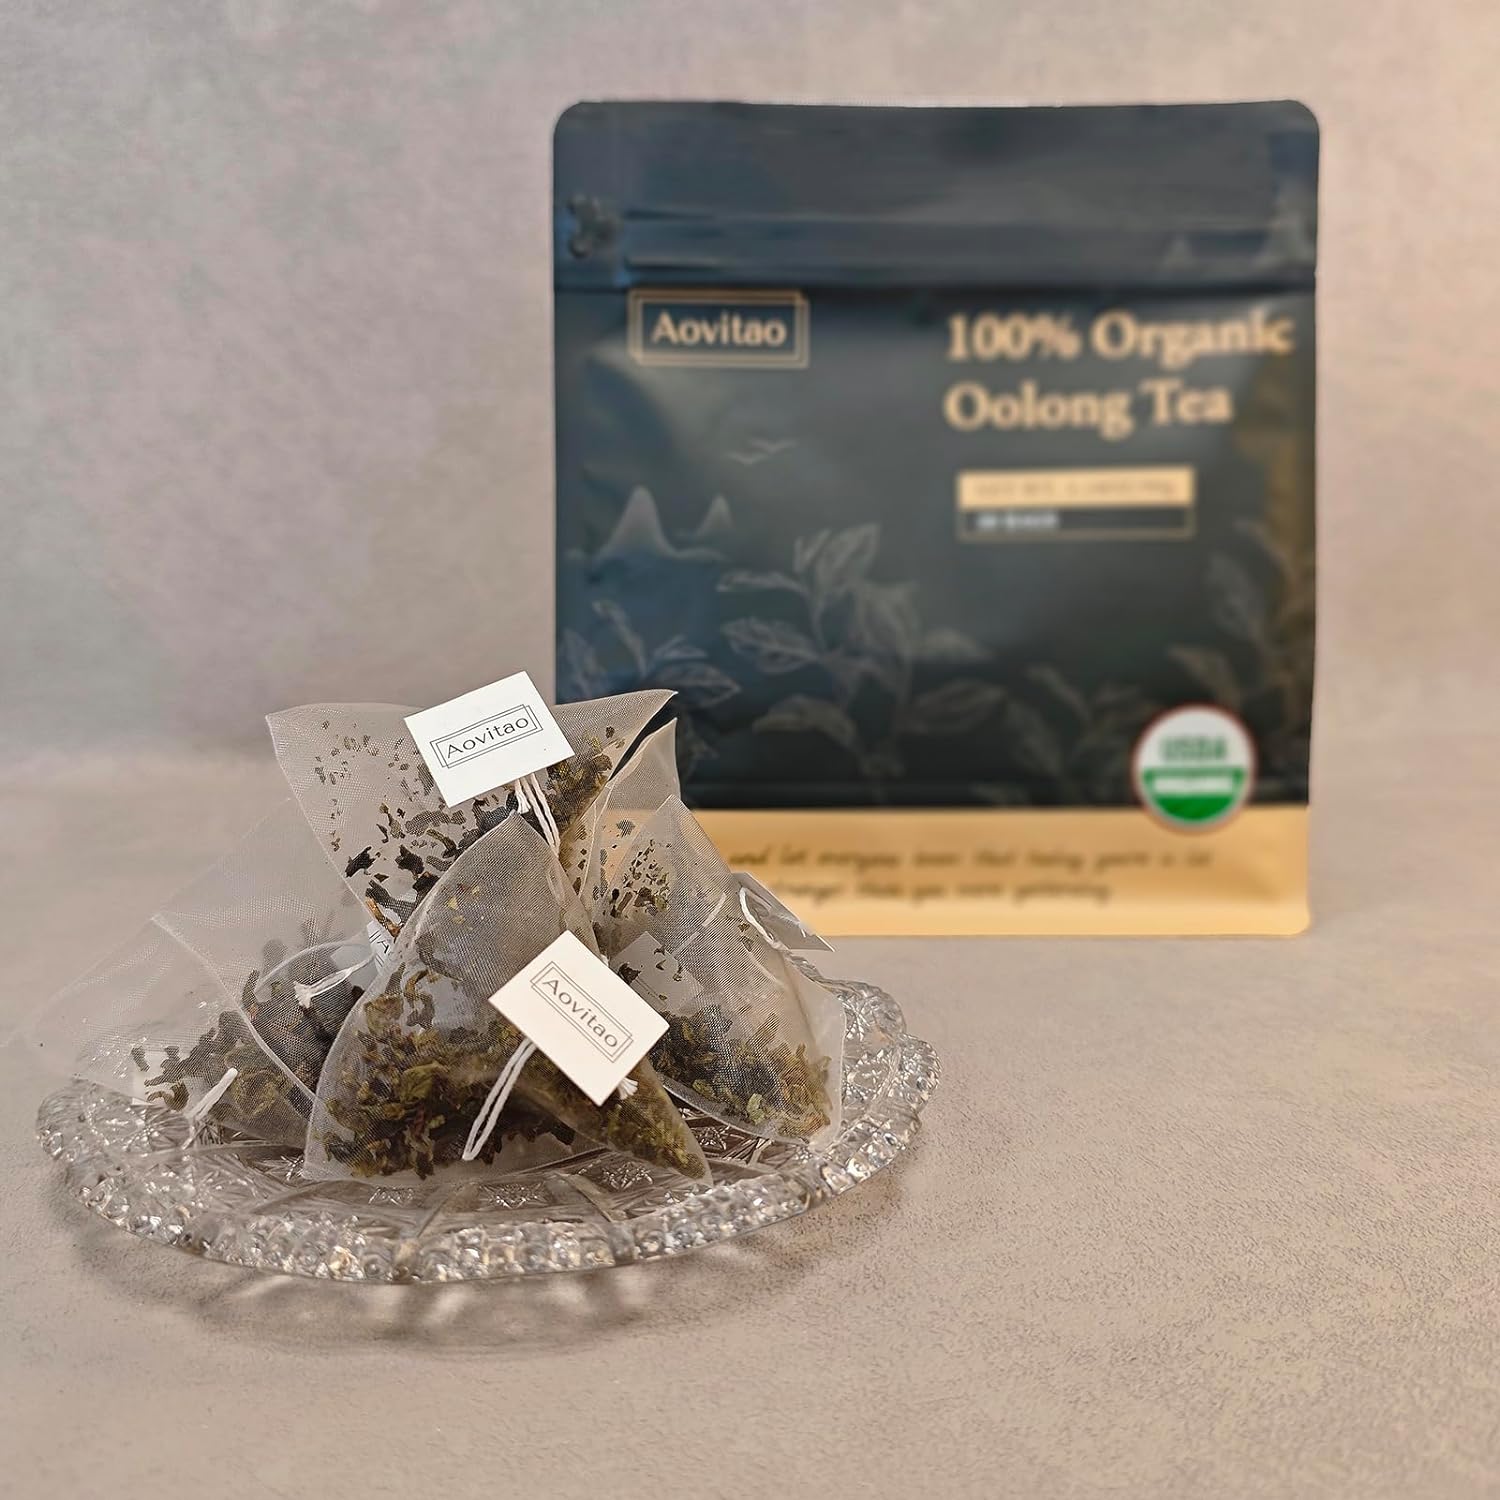 USDA Organic Oolong Tea Bag (30 Pyramid Tea Bag/90g 100% Natural Loose Leaf, Unblended Oolong Tea, Hot, Icy or Kombucha Ready (30bags/90g, TieGuanYin Oolong Tea)